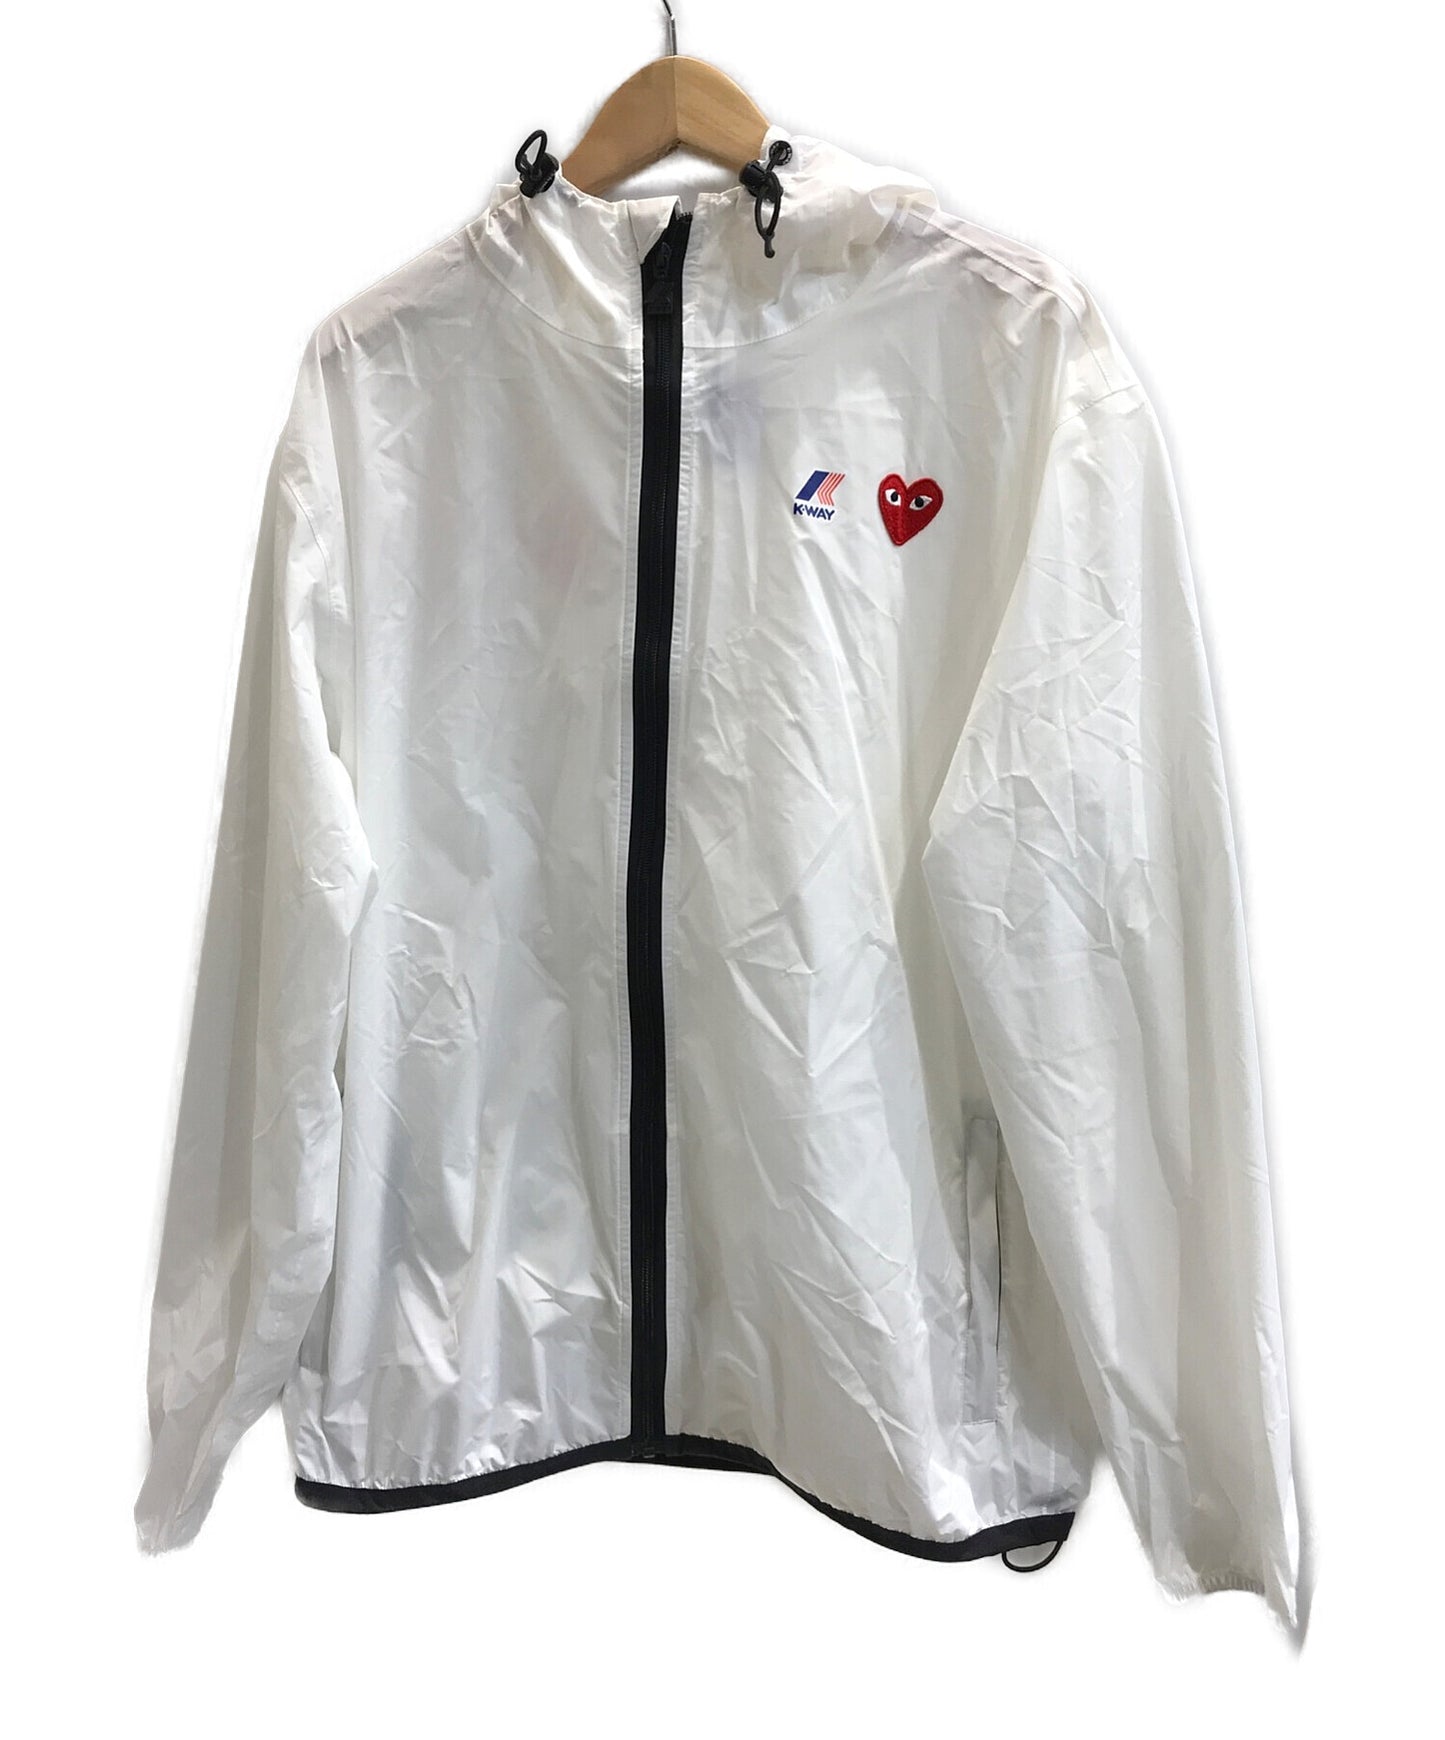 เล่น Comme des garcons x k-way nylon jacket / White K-way edition nylon jacket 221246m180002